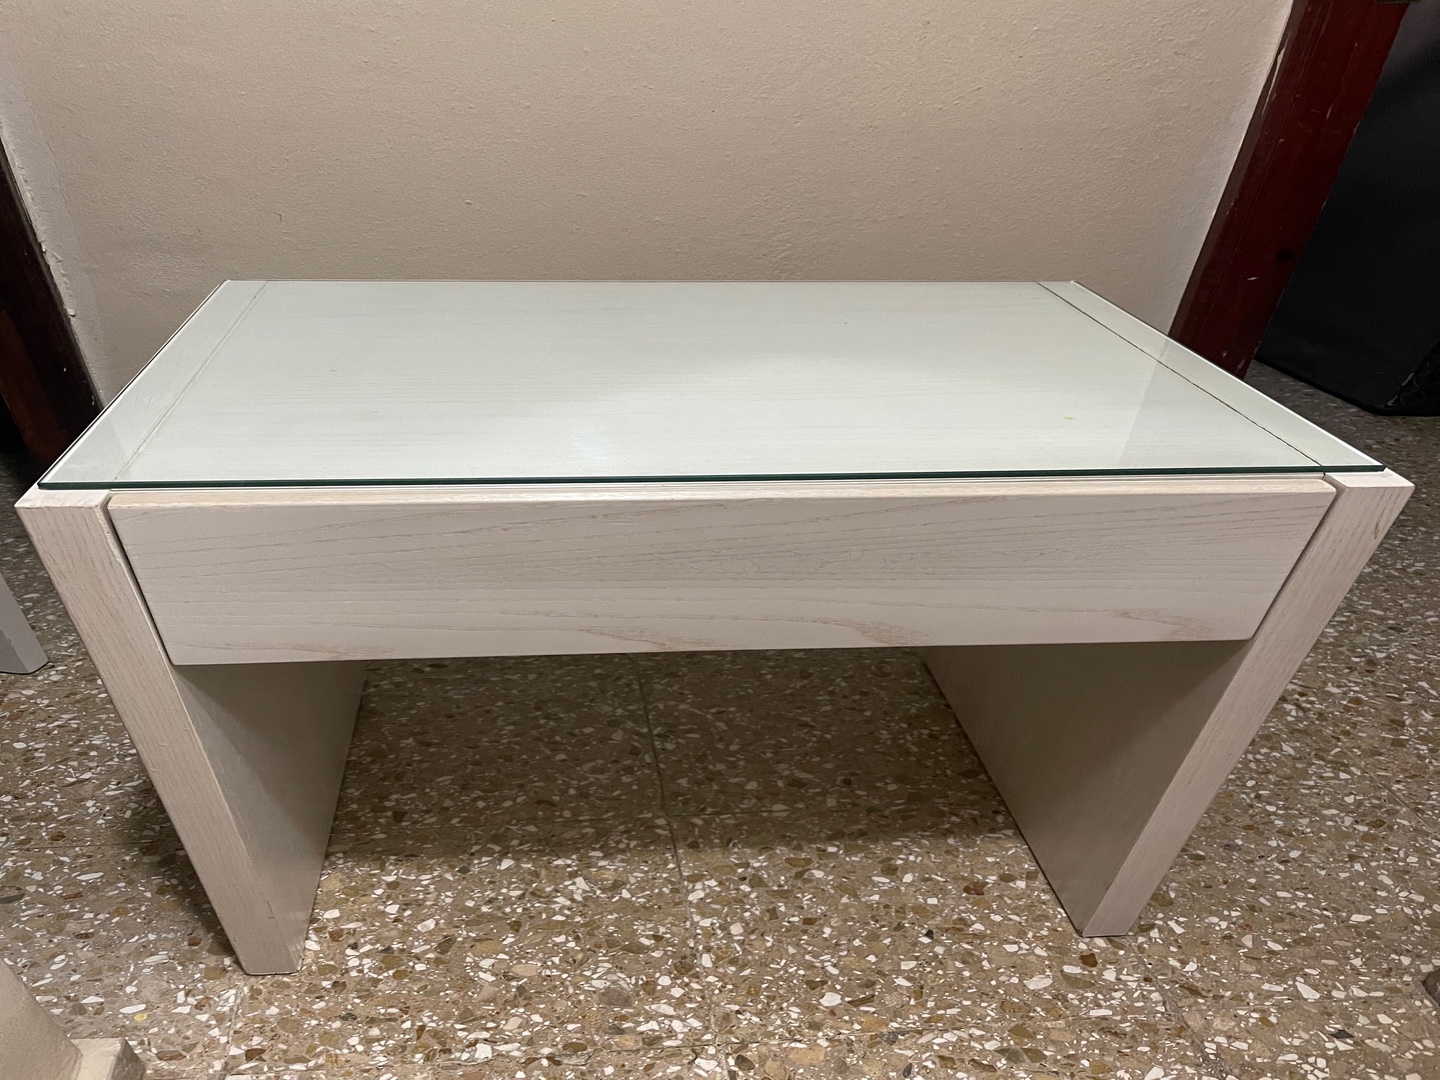 muebles y colchones - 2 mesas de noche en madera color blanco, con tope en cristal.  0